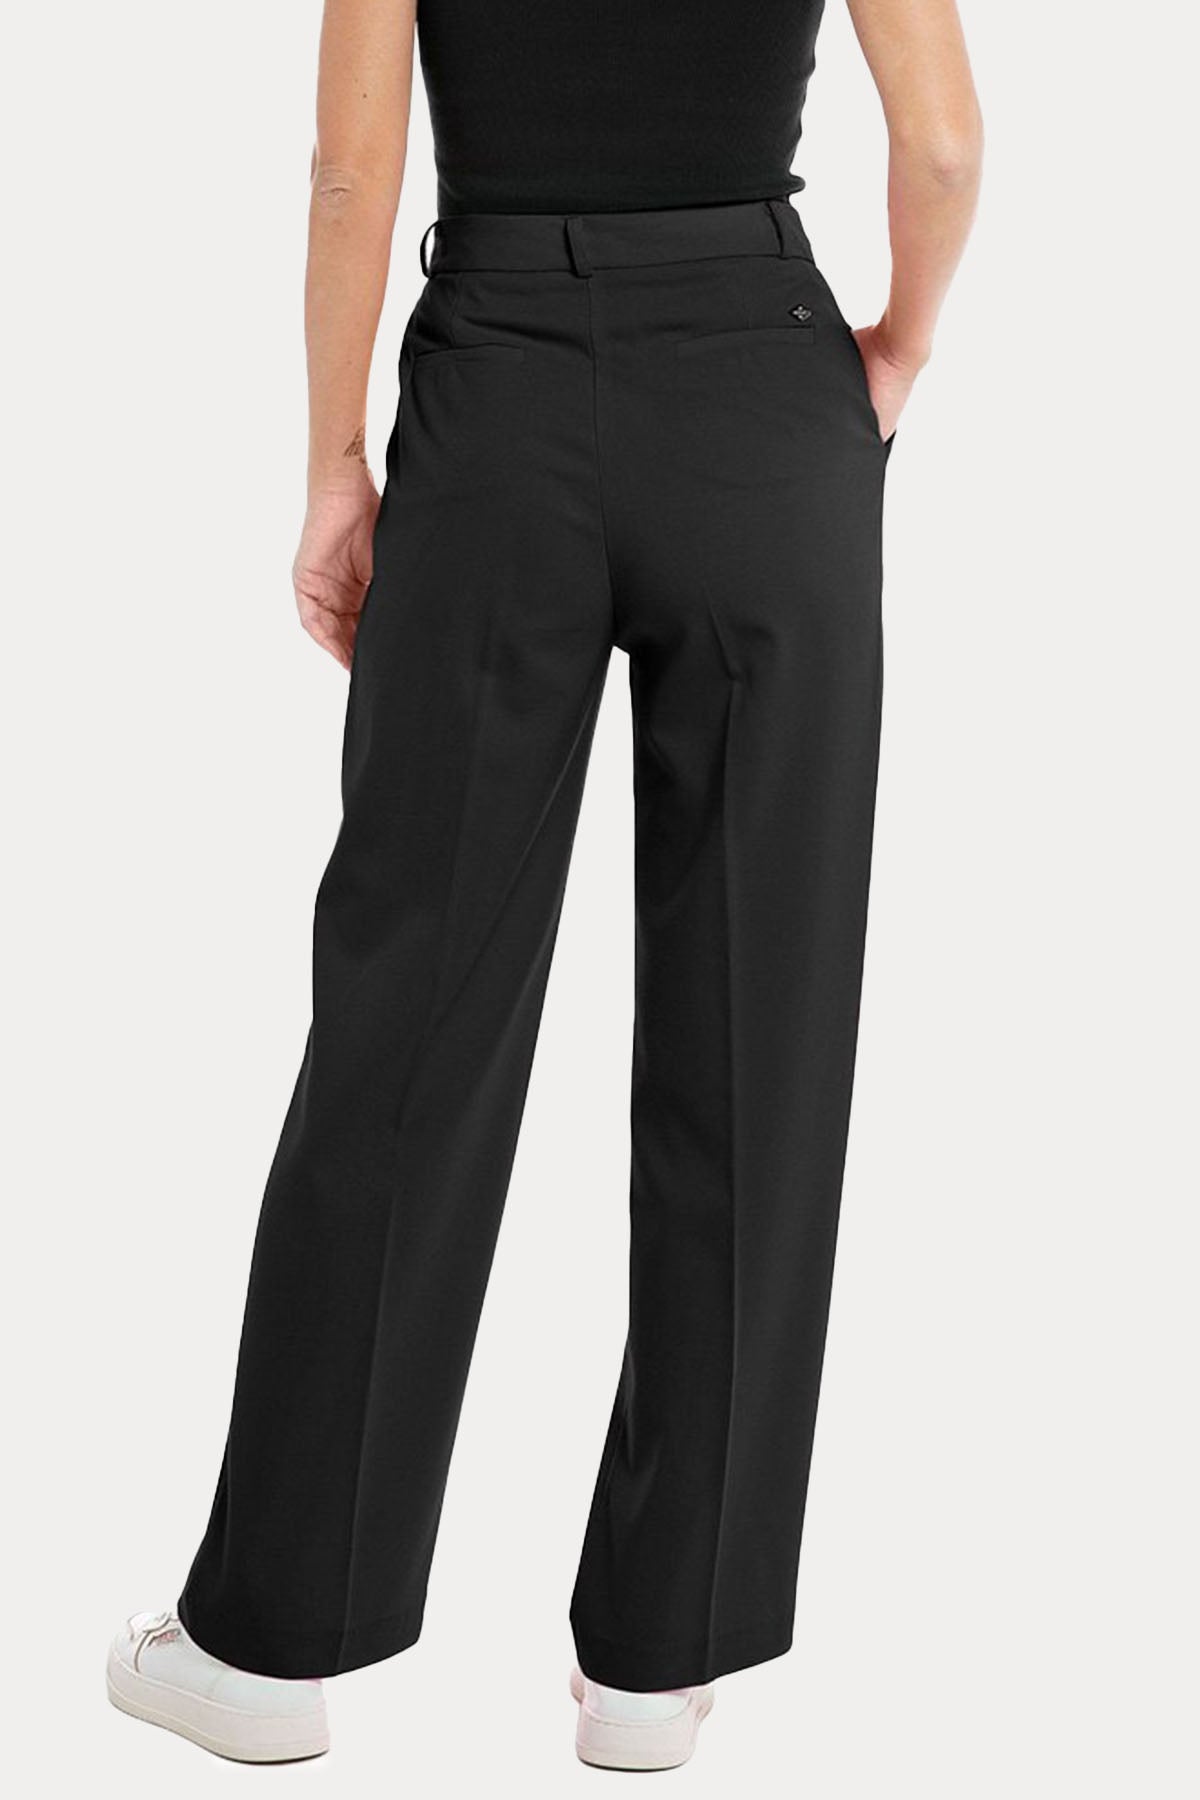 Replay Tek Pile Yandan Cepli Pantolon-Libas Trendy Fashion Store